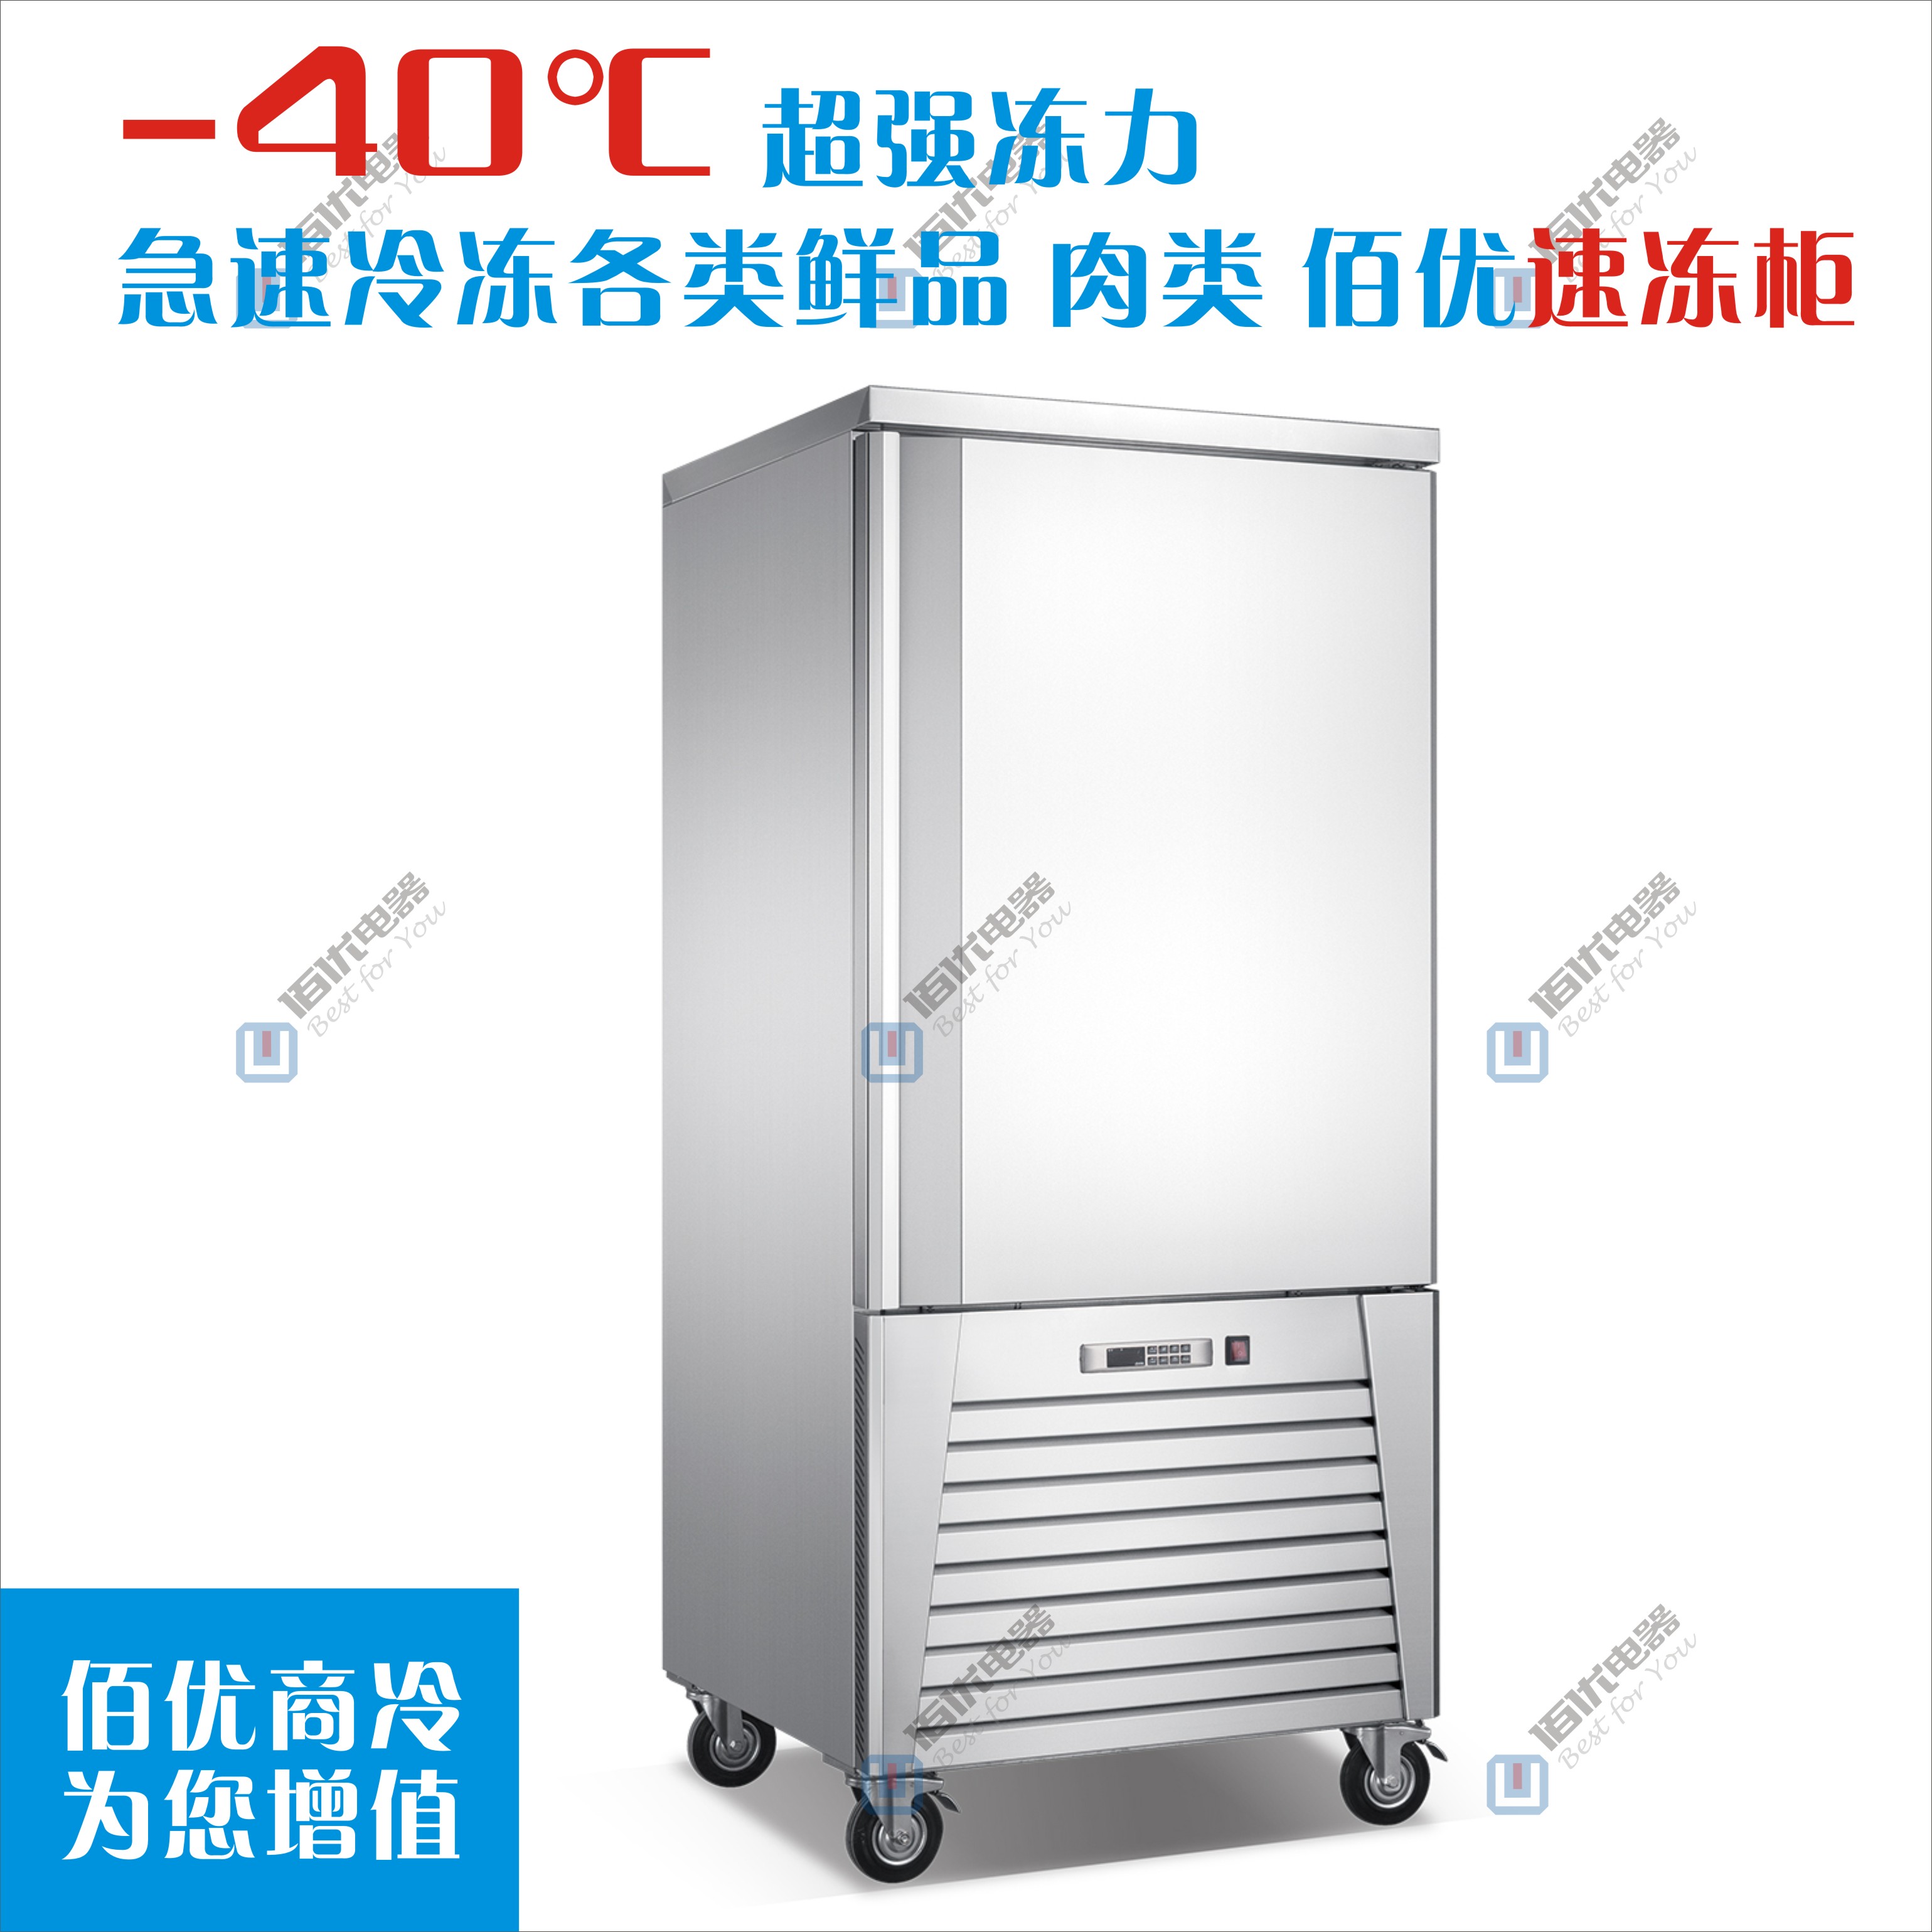 急速冷冻柜，插盘式面团水饺速冻柜，生鲜速冻柜订制 急速冰柜图片